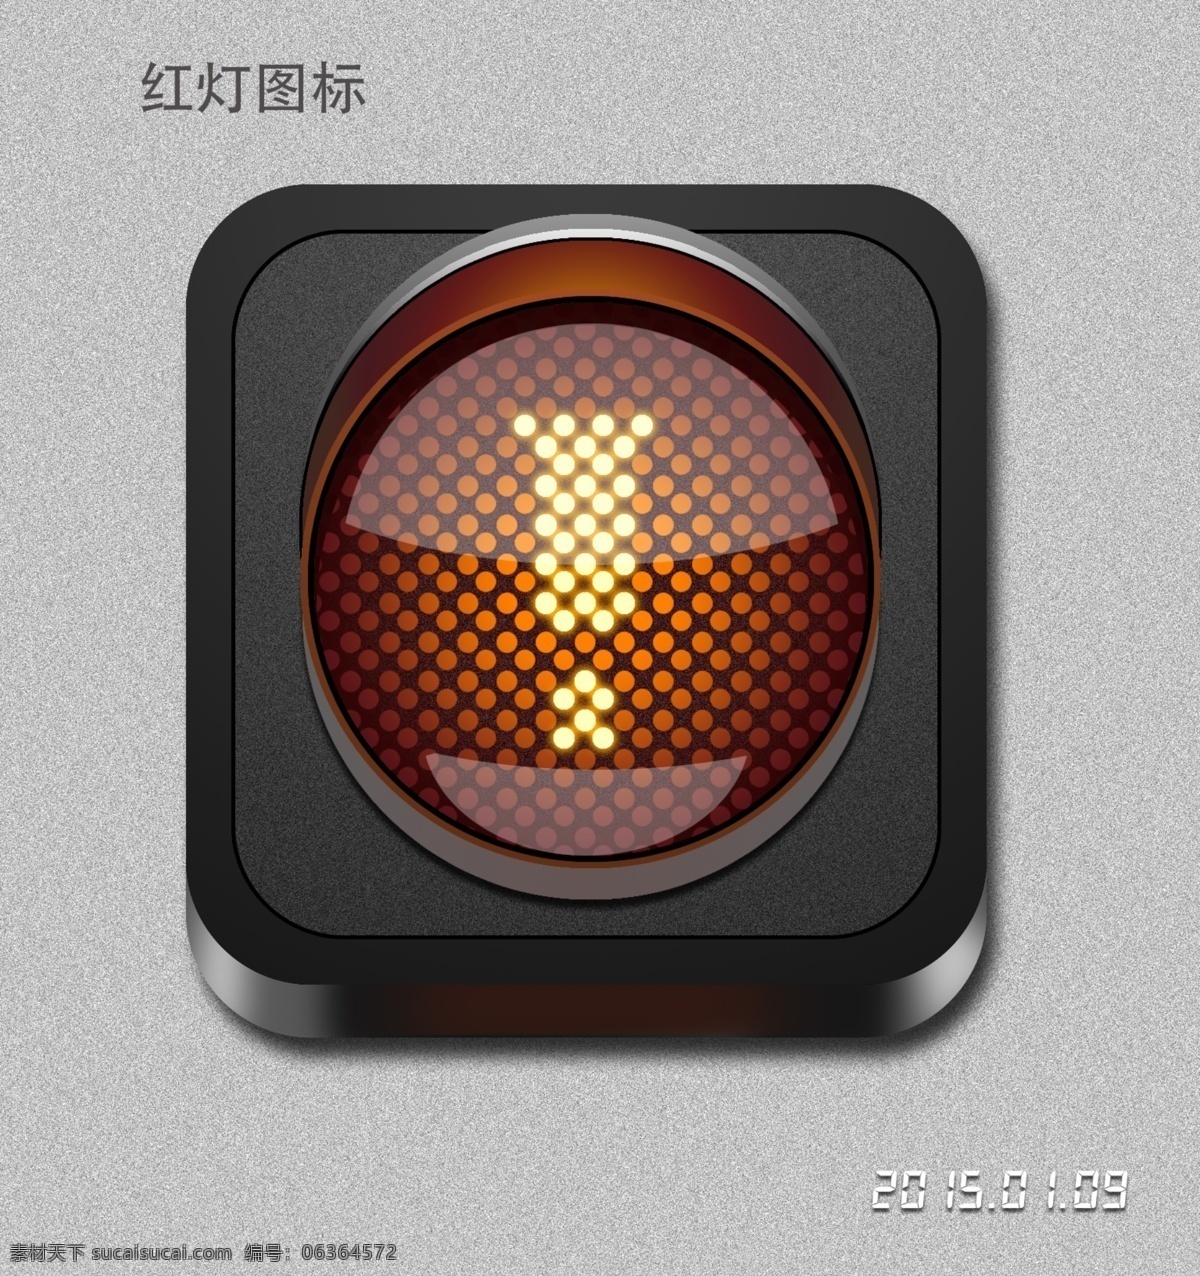 红灯图标 红灯 立体 感叹号 黑色 拟物 移动界面设计 图标设计